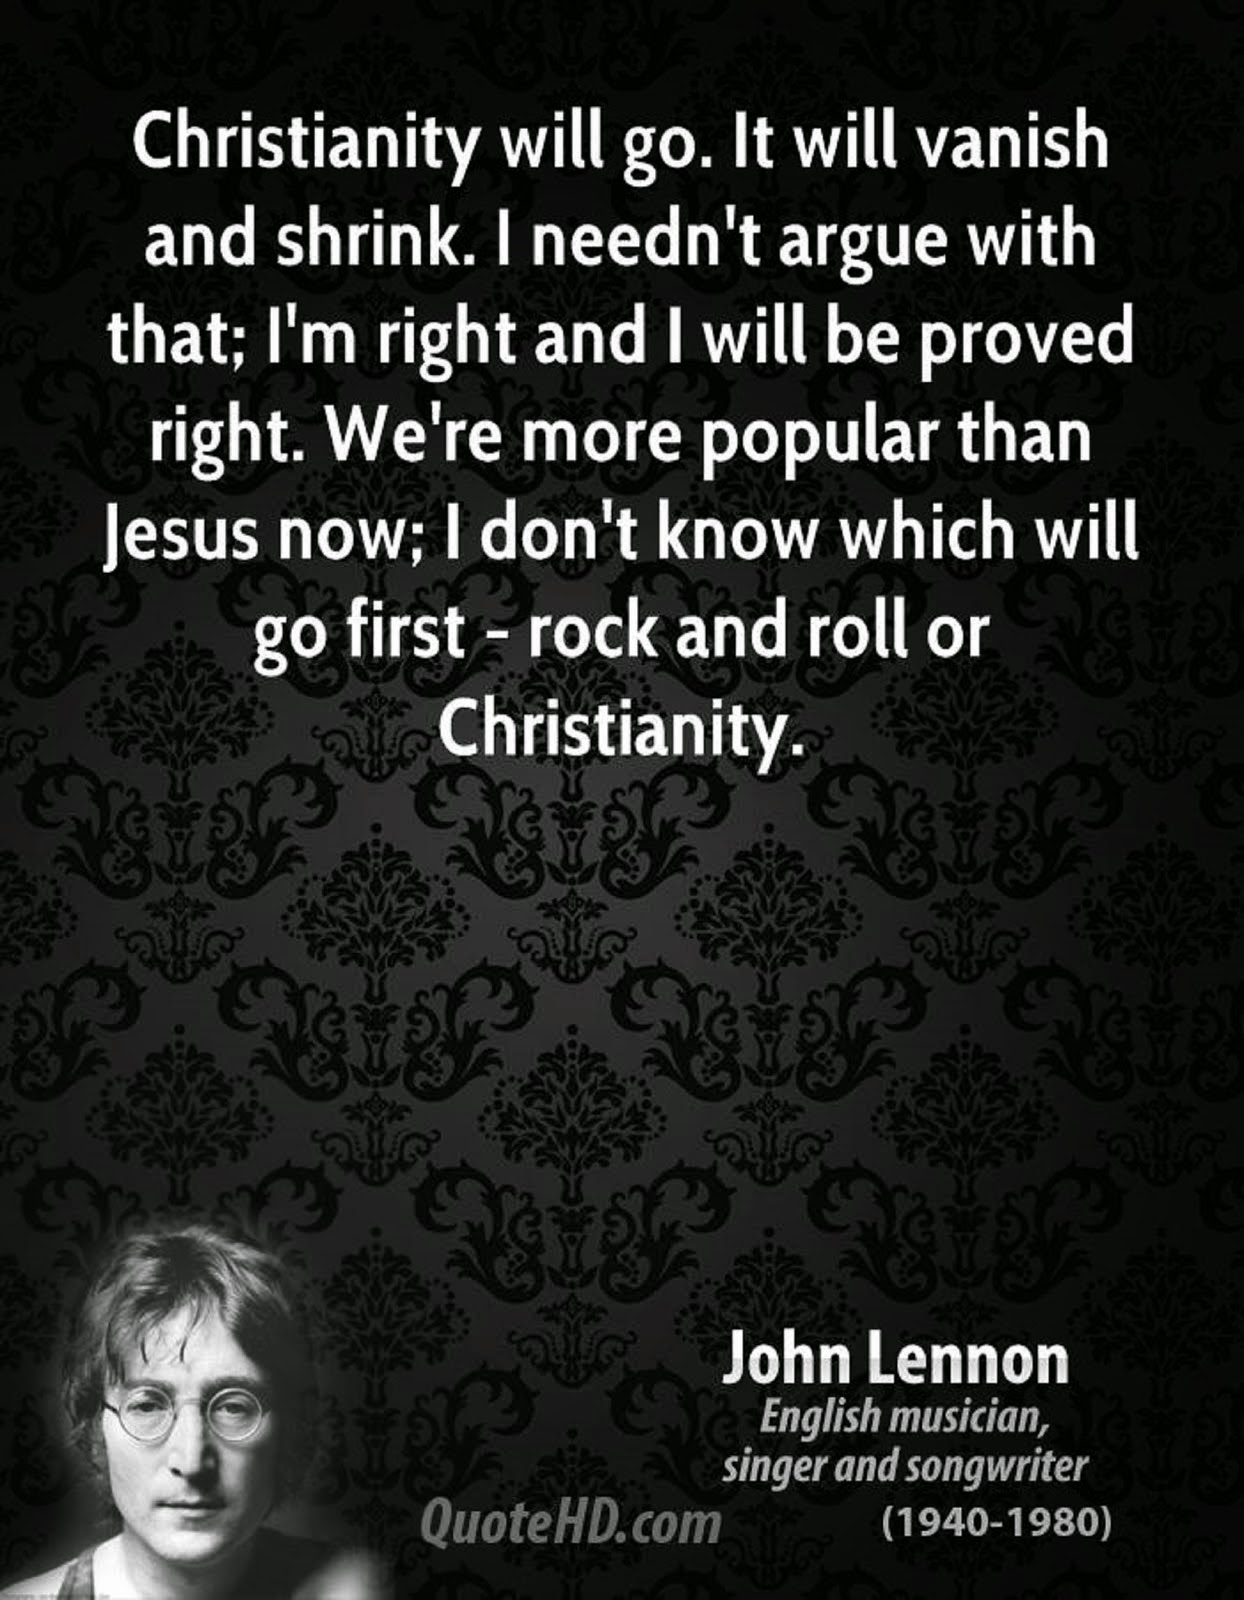 JOHN LENNON VS CHRISTIANITY